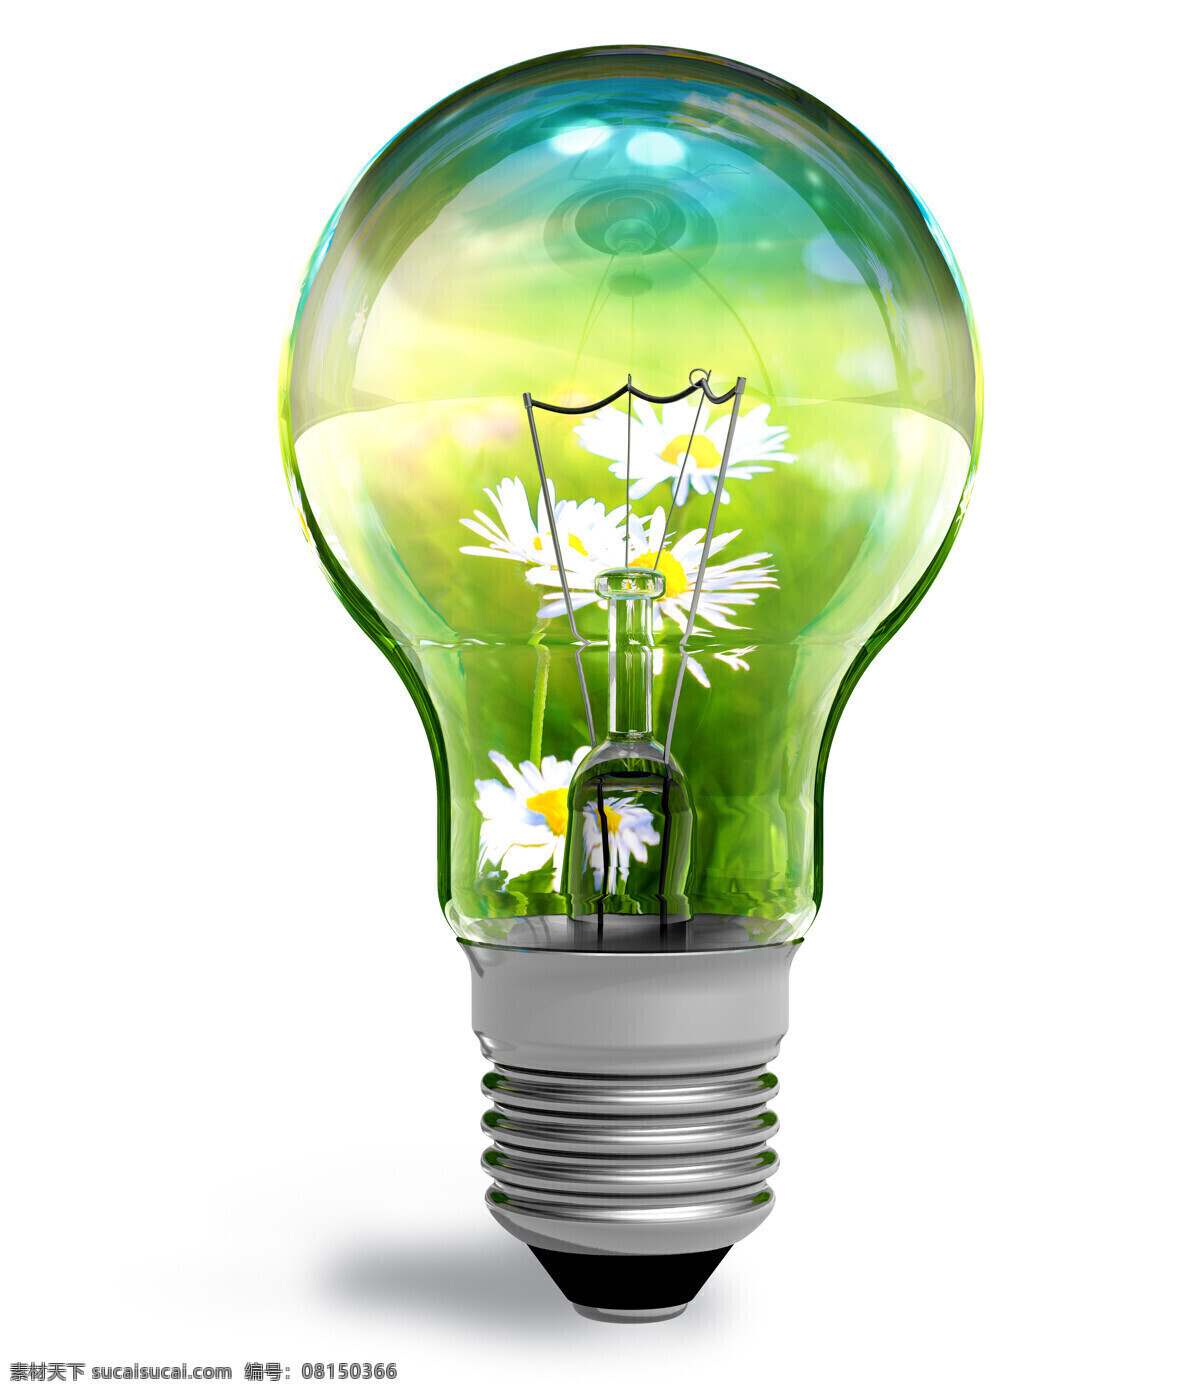 创意电灯设计 花朵 鲜花 植物 电灯 电灯摄影 灯泡 生活用品 节能 环保 其他类别 生活百科 白色